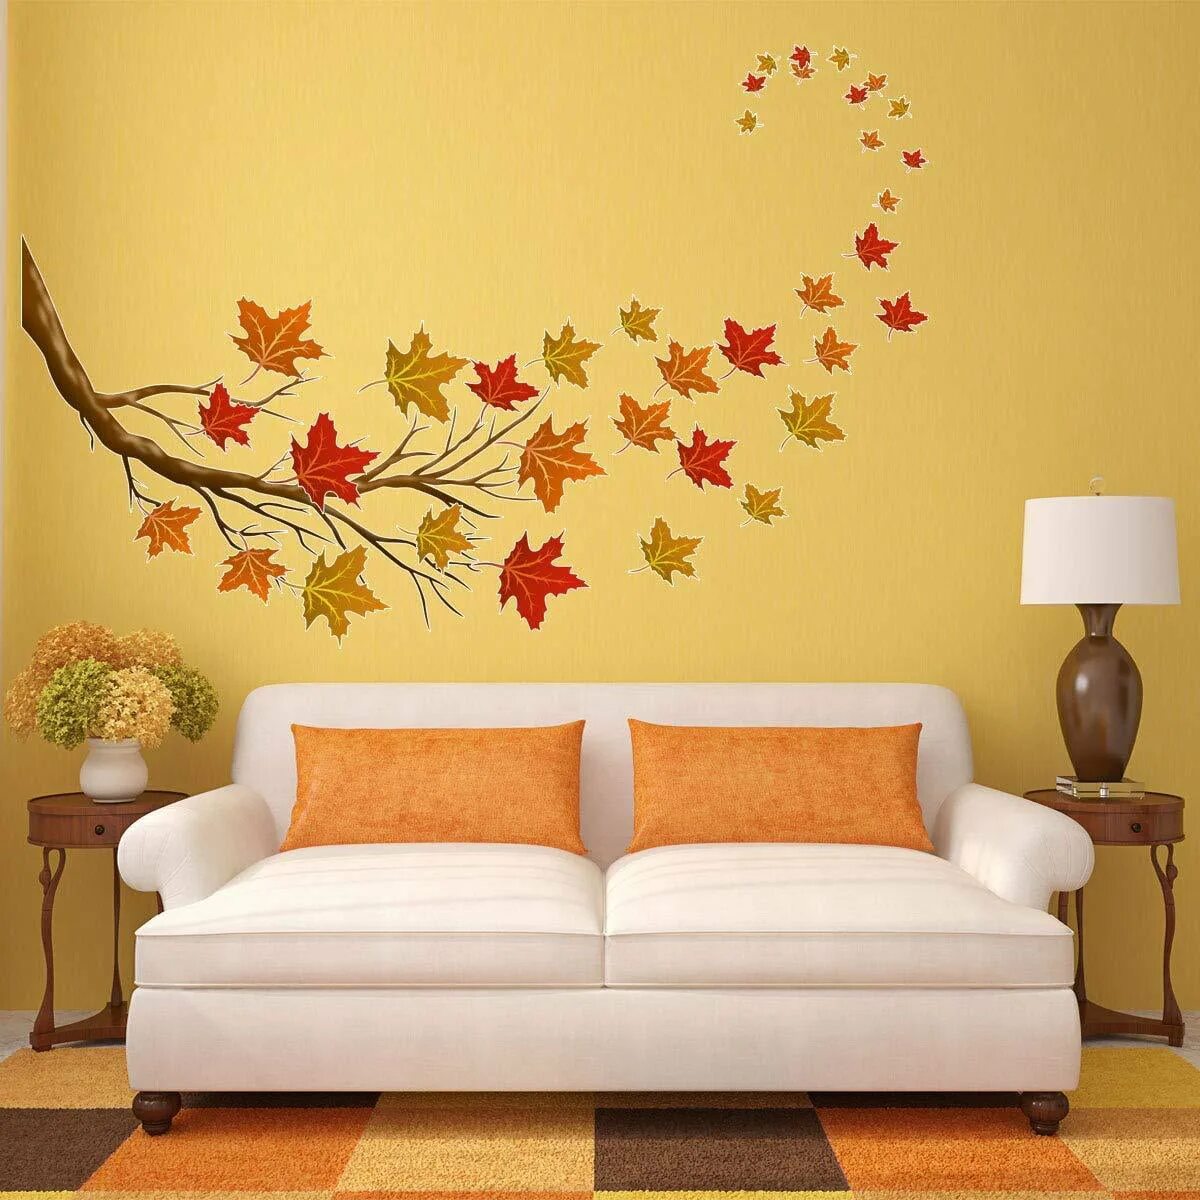 Wall fall. Фотообои осень на стену. Наклейки интерьерные осенние. Осенние листья в интерьере. Осеннее оформление стены.